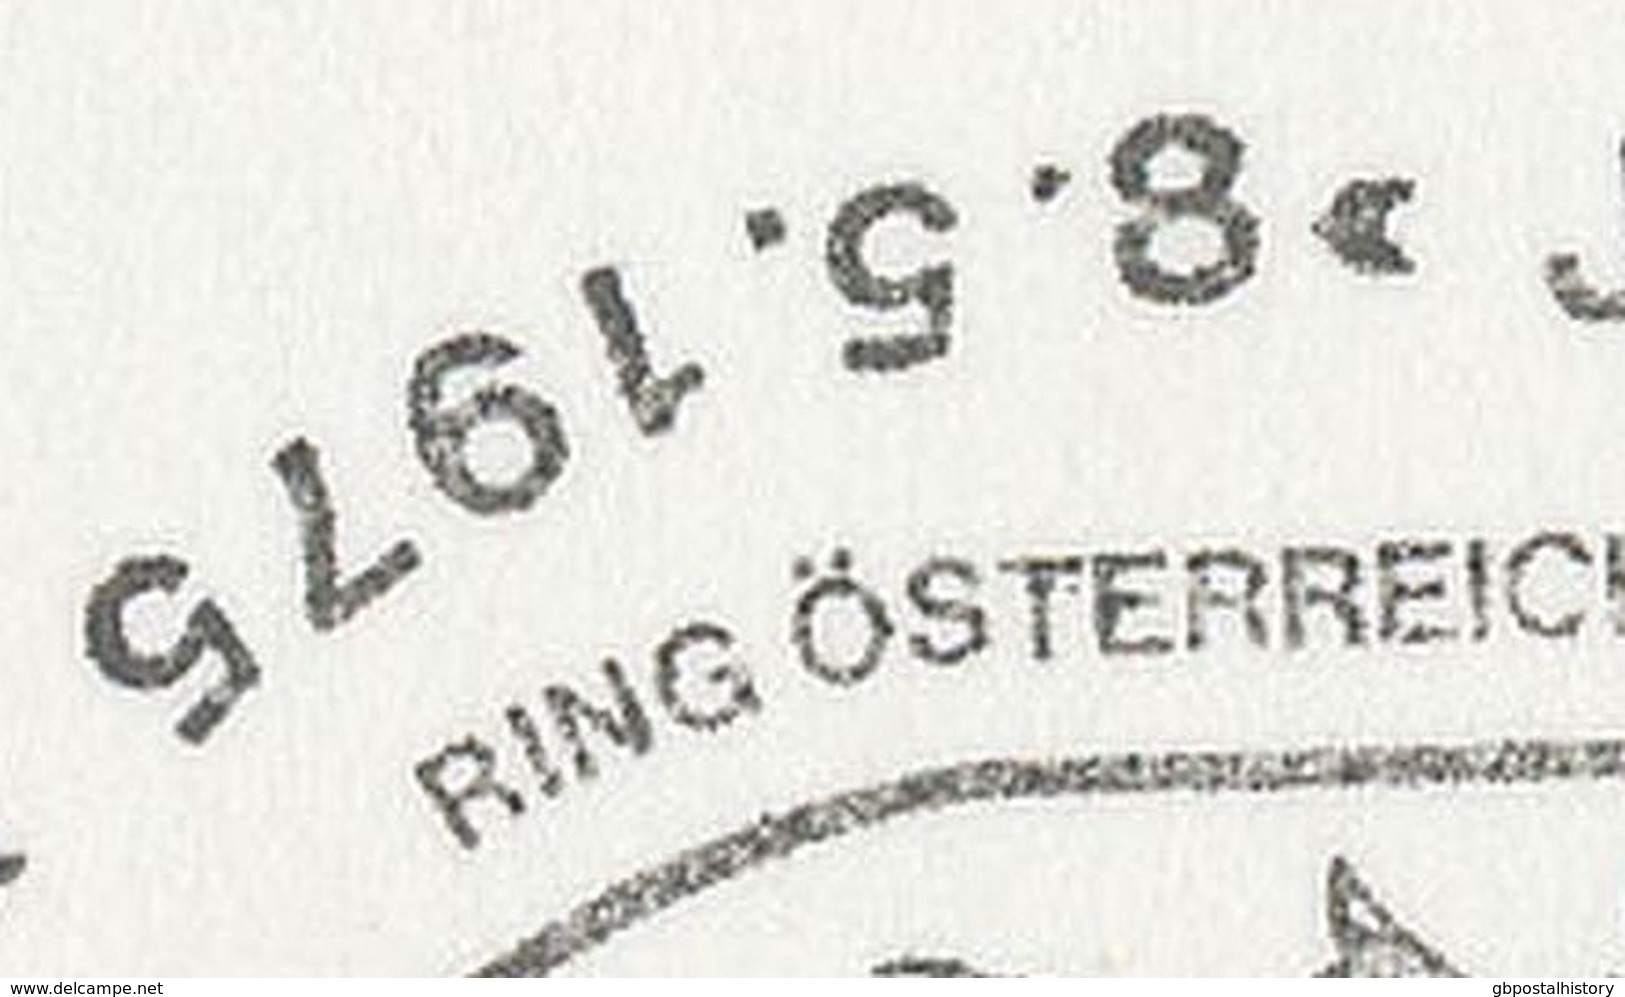 ÖSTERREICH 1975 4840 VÖCKLABRUCK Jugend-Briefmarken-Ausstellung - 30 Jahre 2.Republik Österreich 1945-1975 STEMPELFEHLER - Maschinenstempel (EMA)